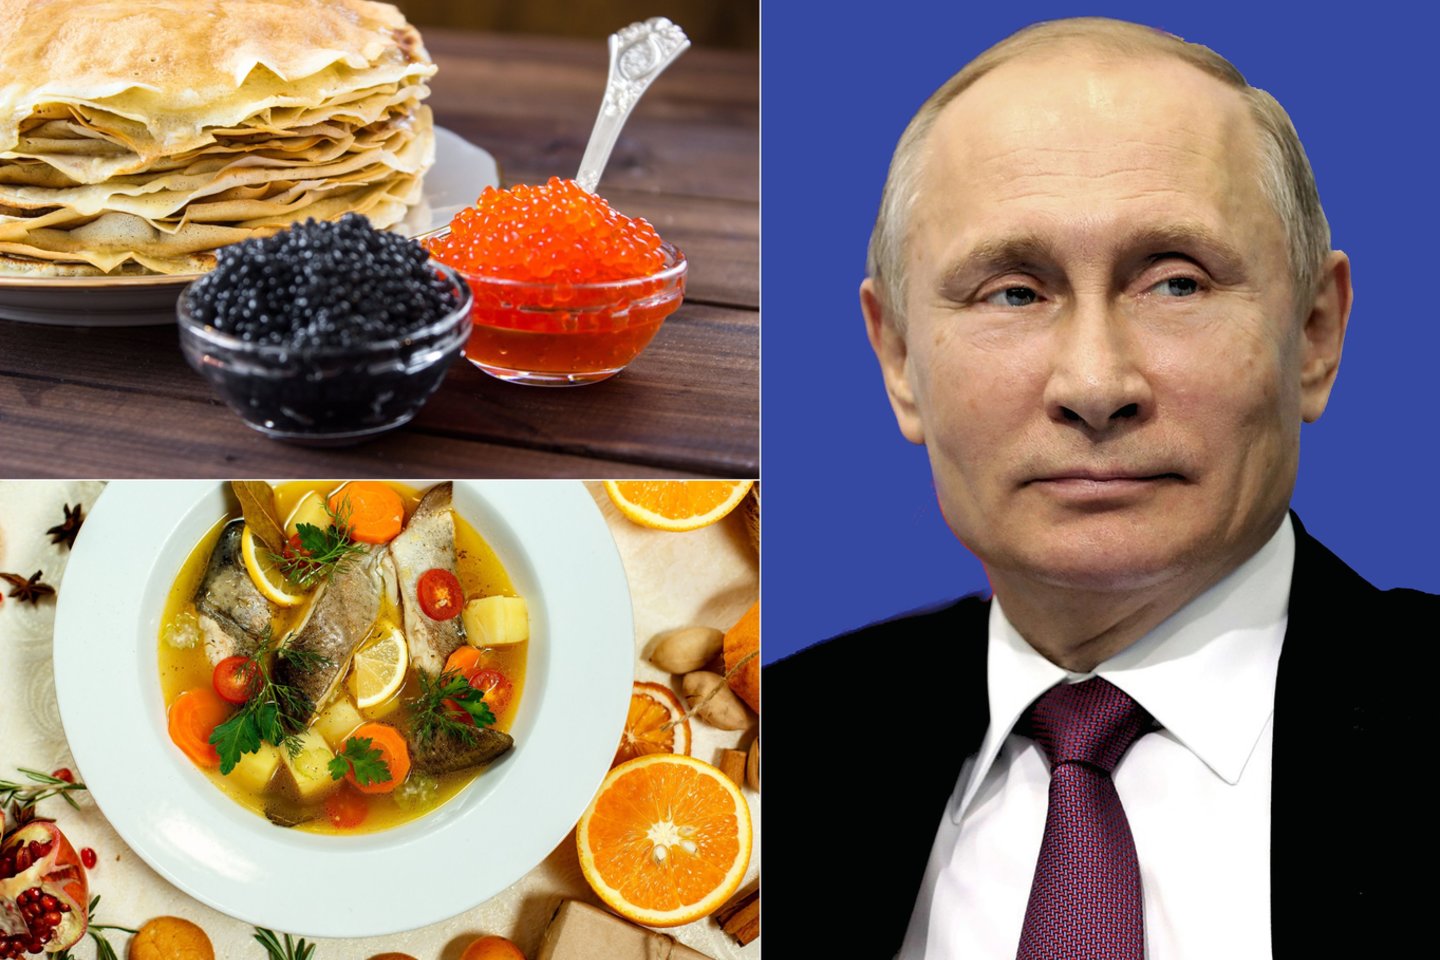 Teigiama, kad apie žmogaus charakterį galima spręsti pagal mėgstamiausius patiekalus. Kas yra žinoma apie V.Putino meniu? Kas dažniausiai būna ant jo stalo? <br>123rf nuotr.